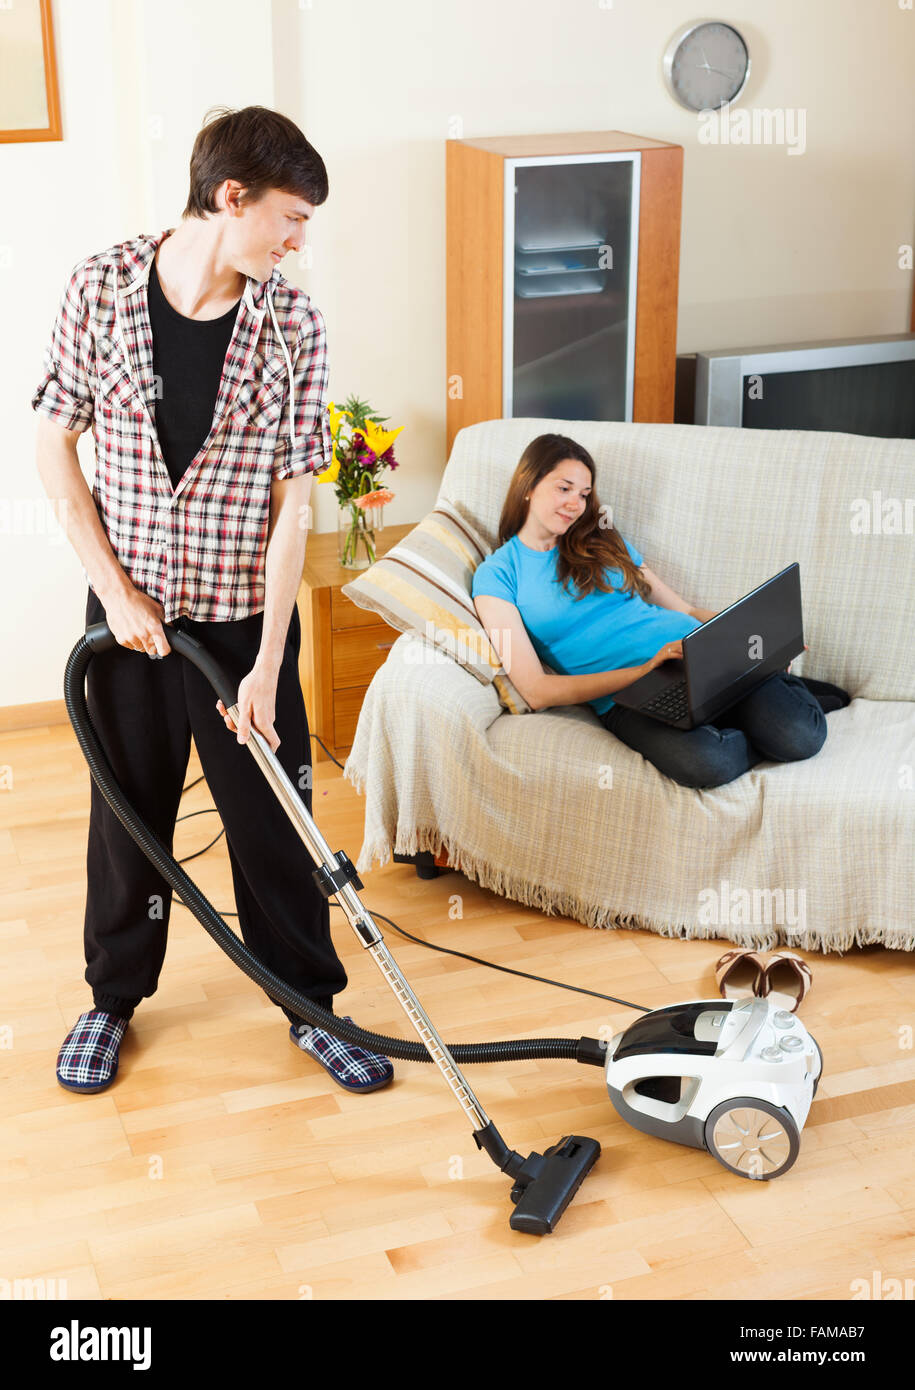 Hombre limpiar con aspiradora piso mientras su esposa acostada con